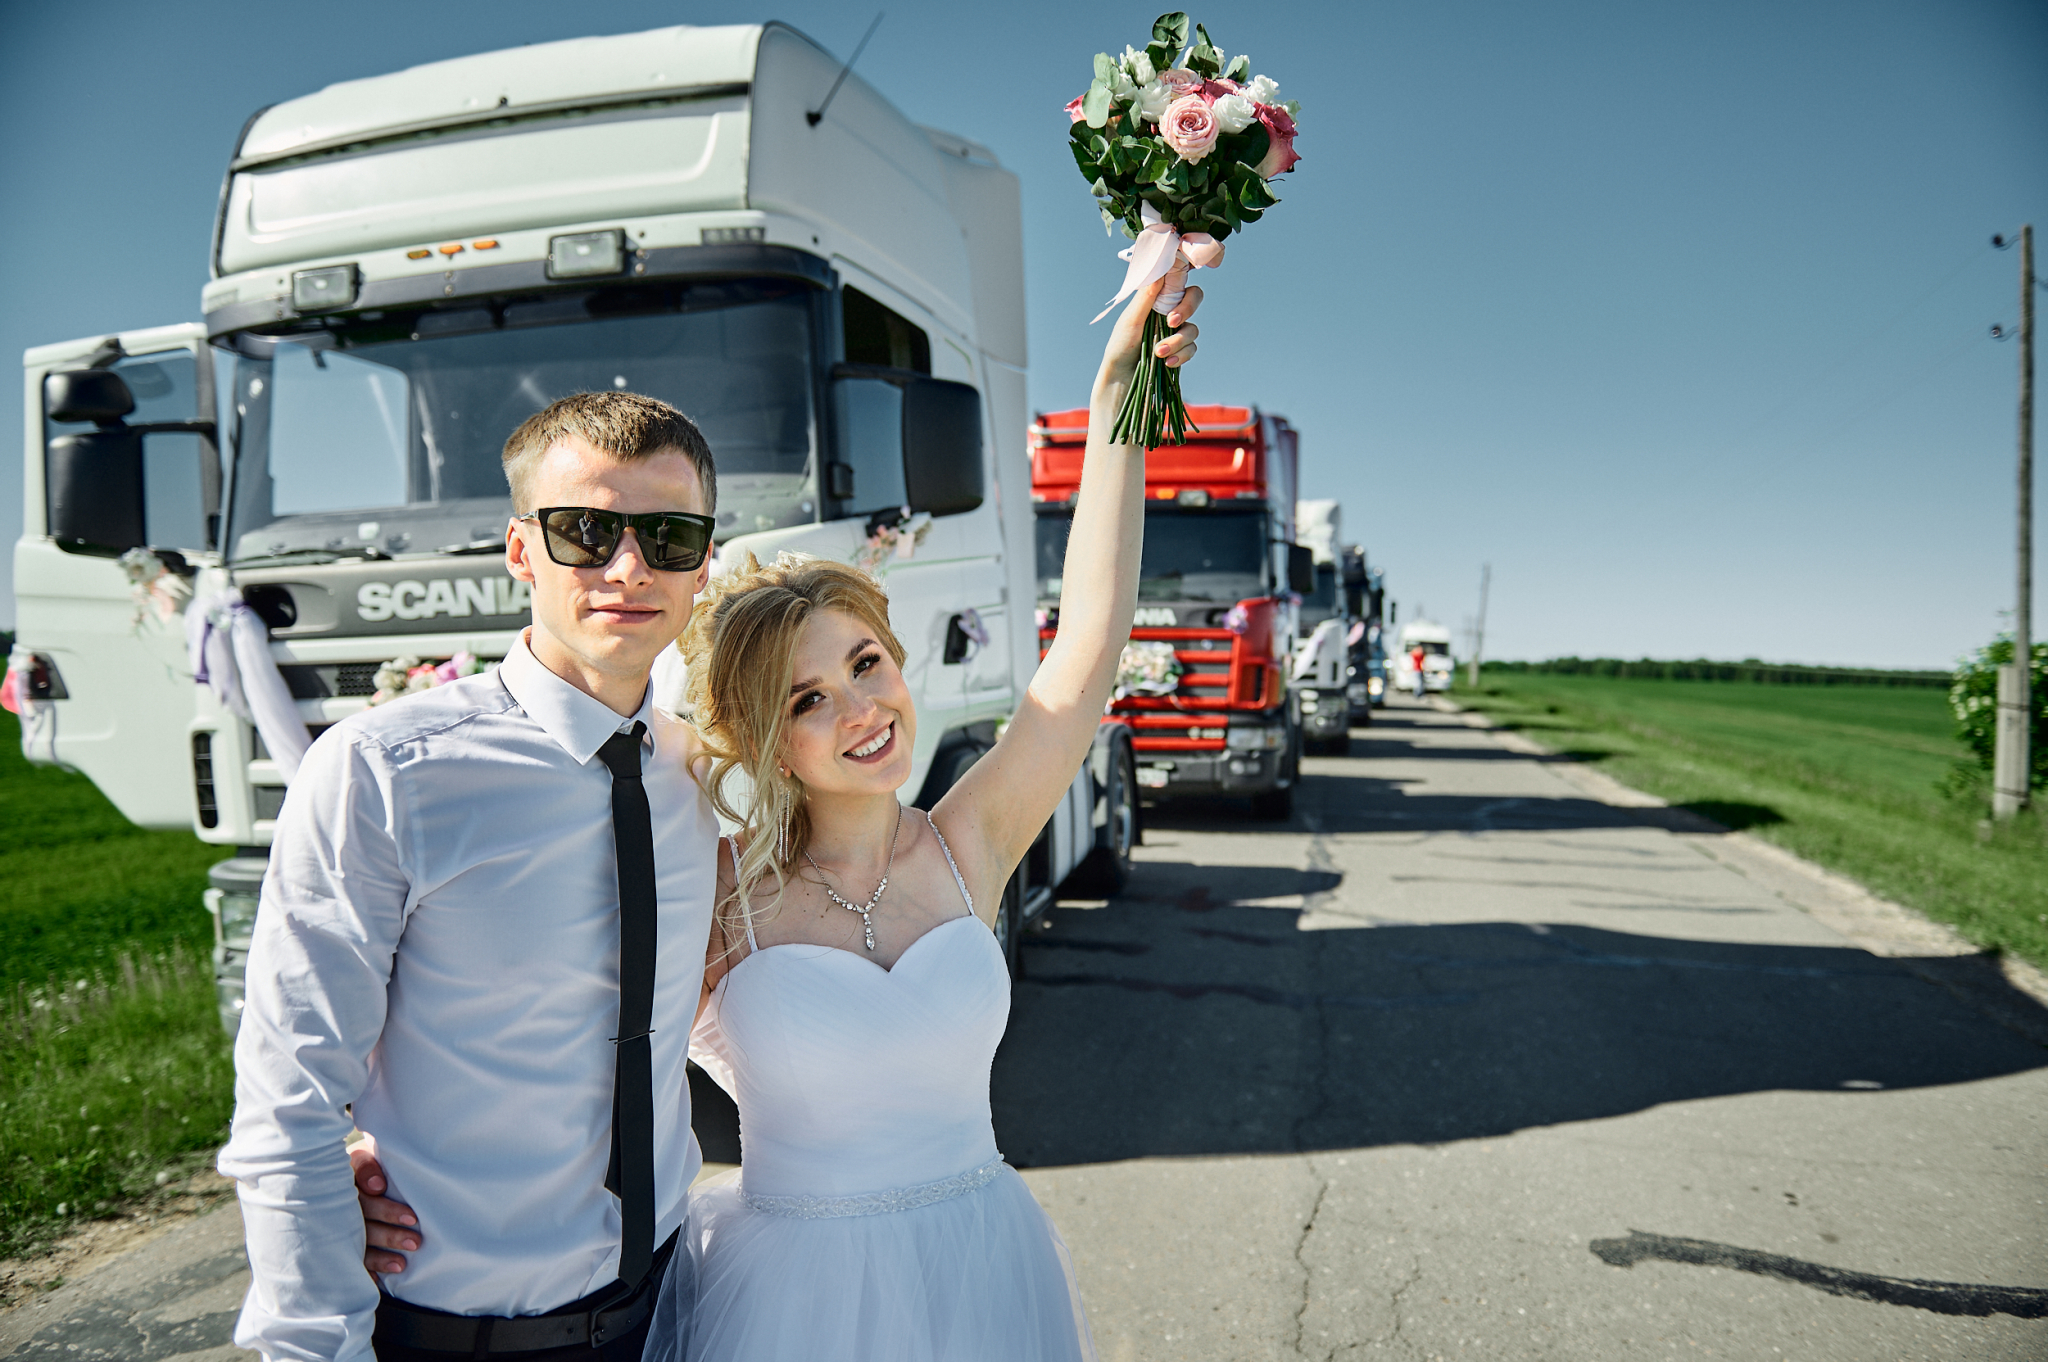 «Мы нашли организаторов свадьбы в шиномонтаже»: невеста из Куменского района о необычном торжестве